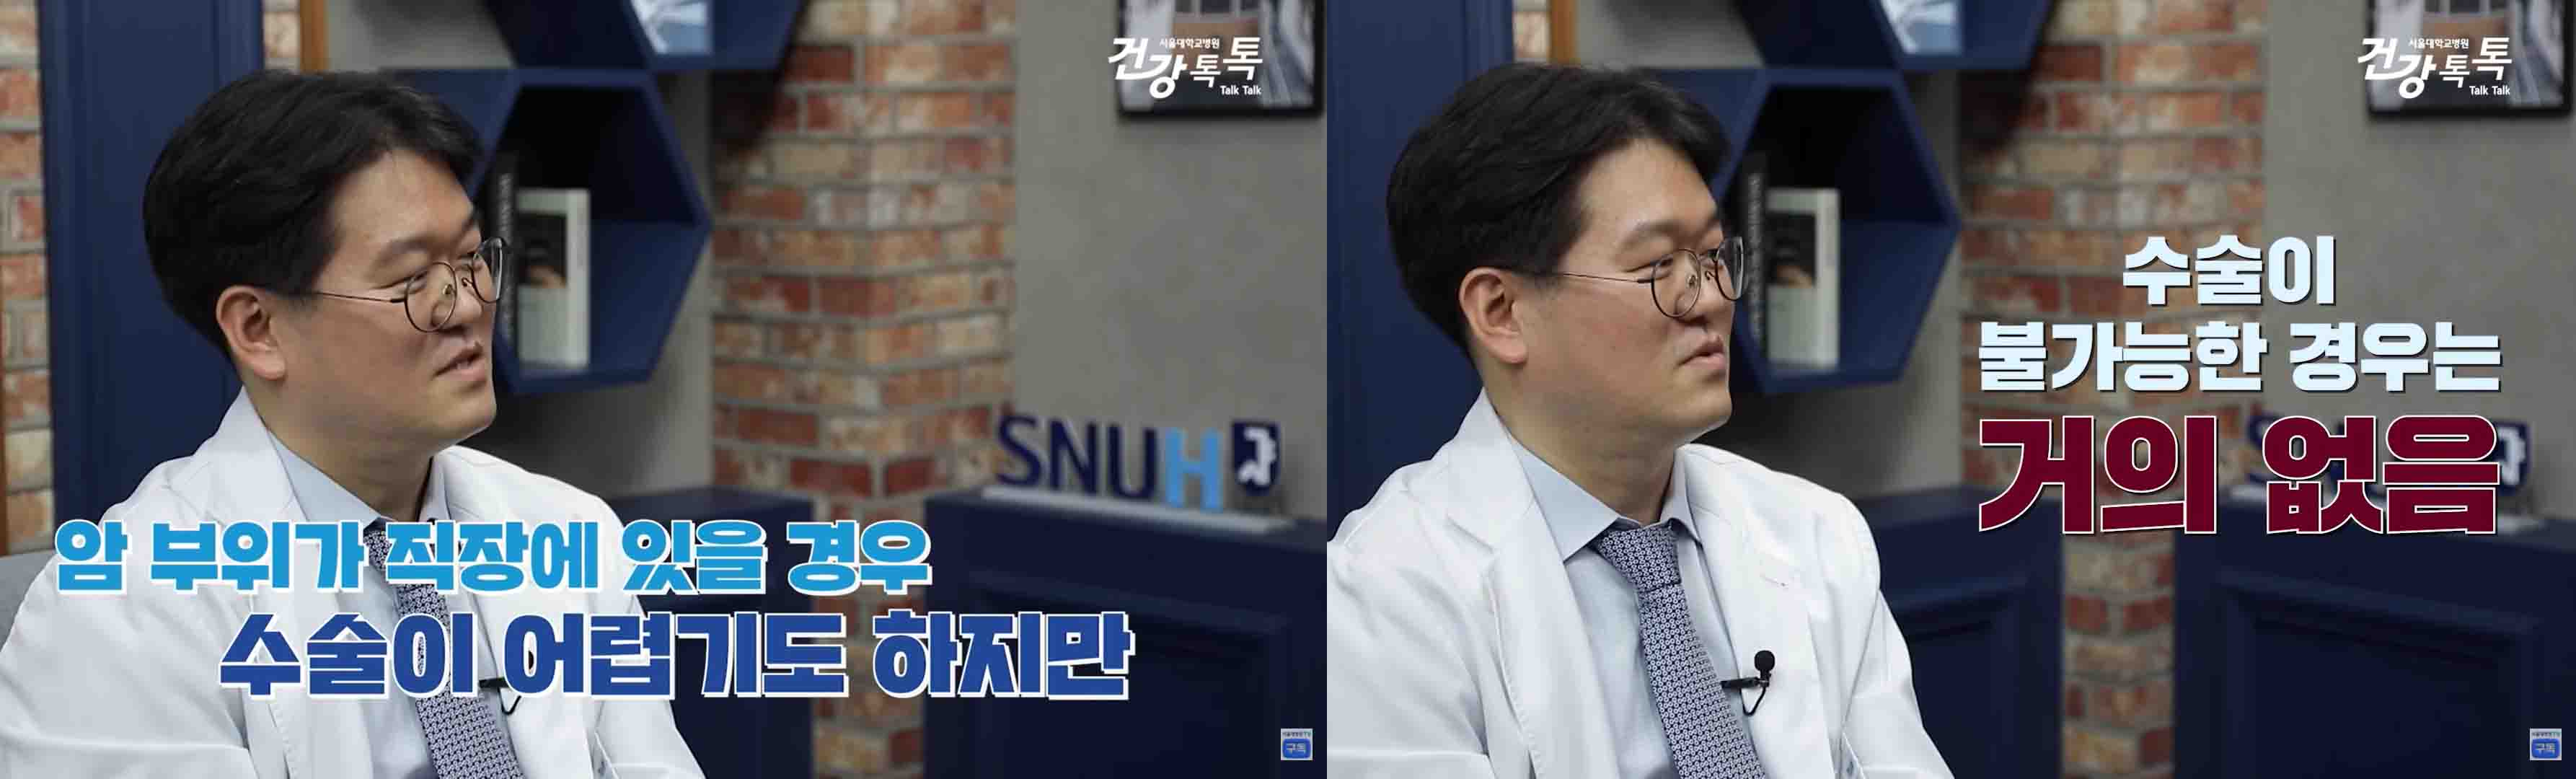 [병원뉴스][SNUH 건강톡톡] '두 얼굴의 암' 대장암